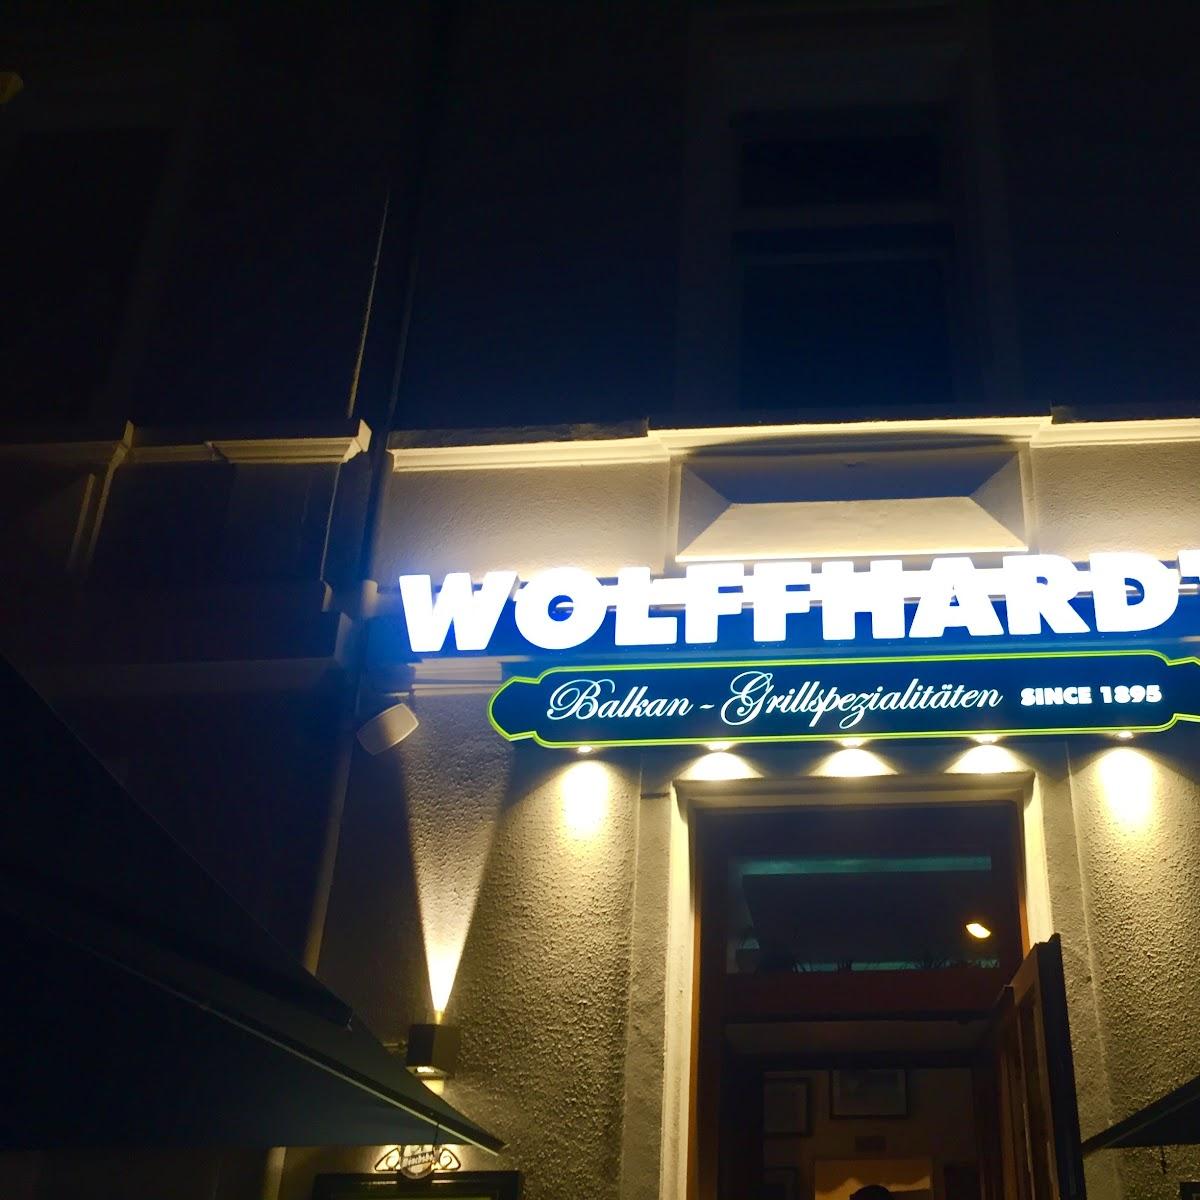 Restaurant "Restaurant Wolffhards" in Frankfurt am Main